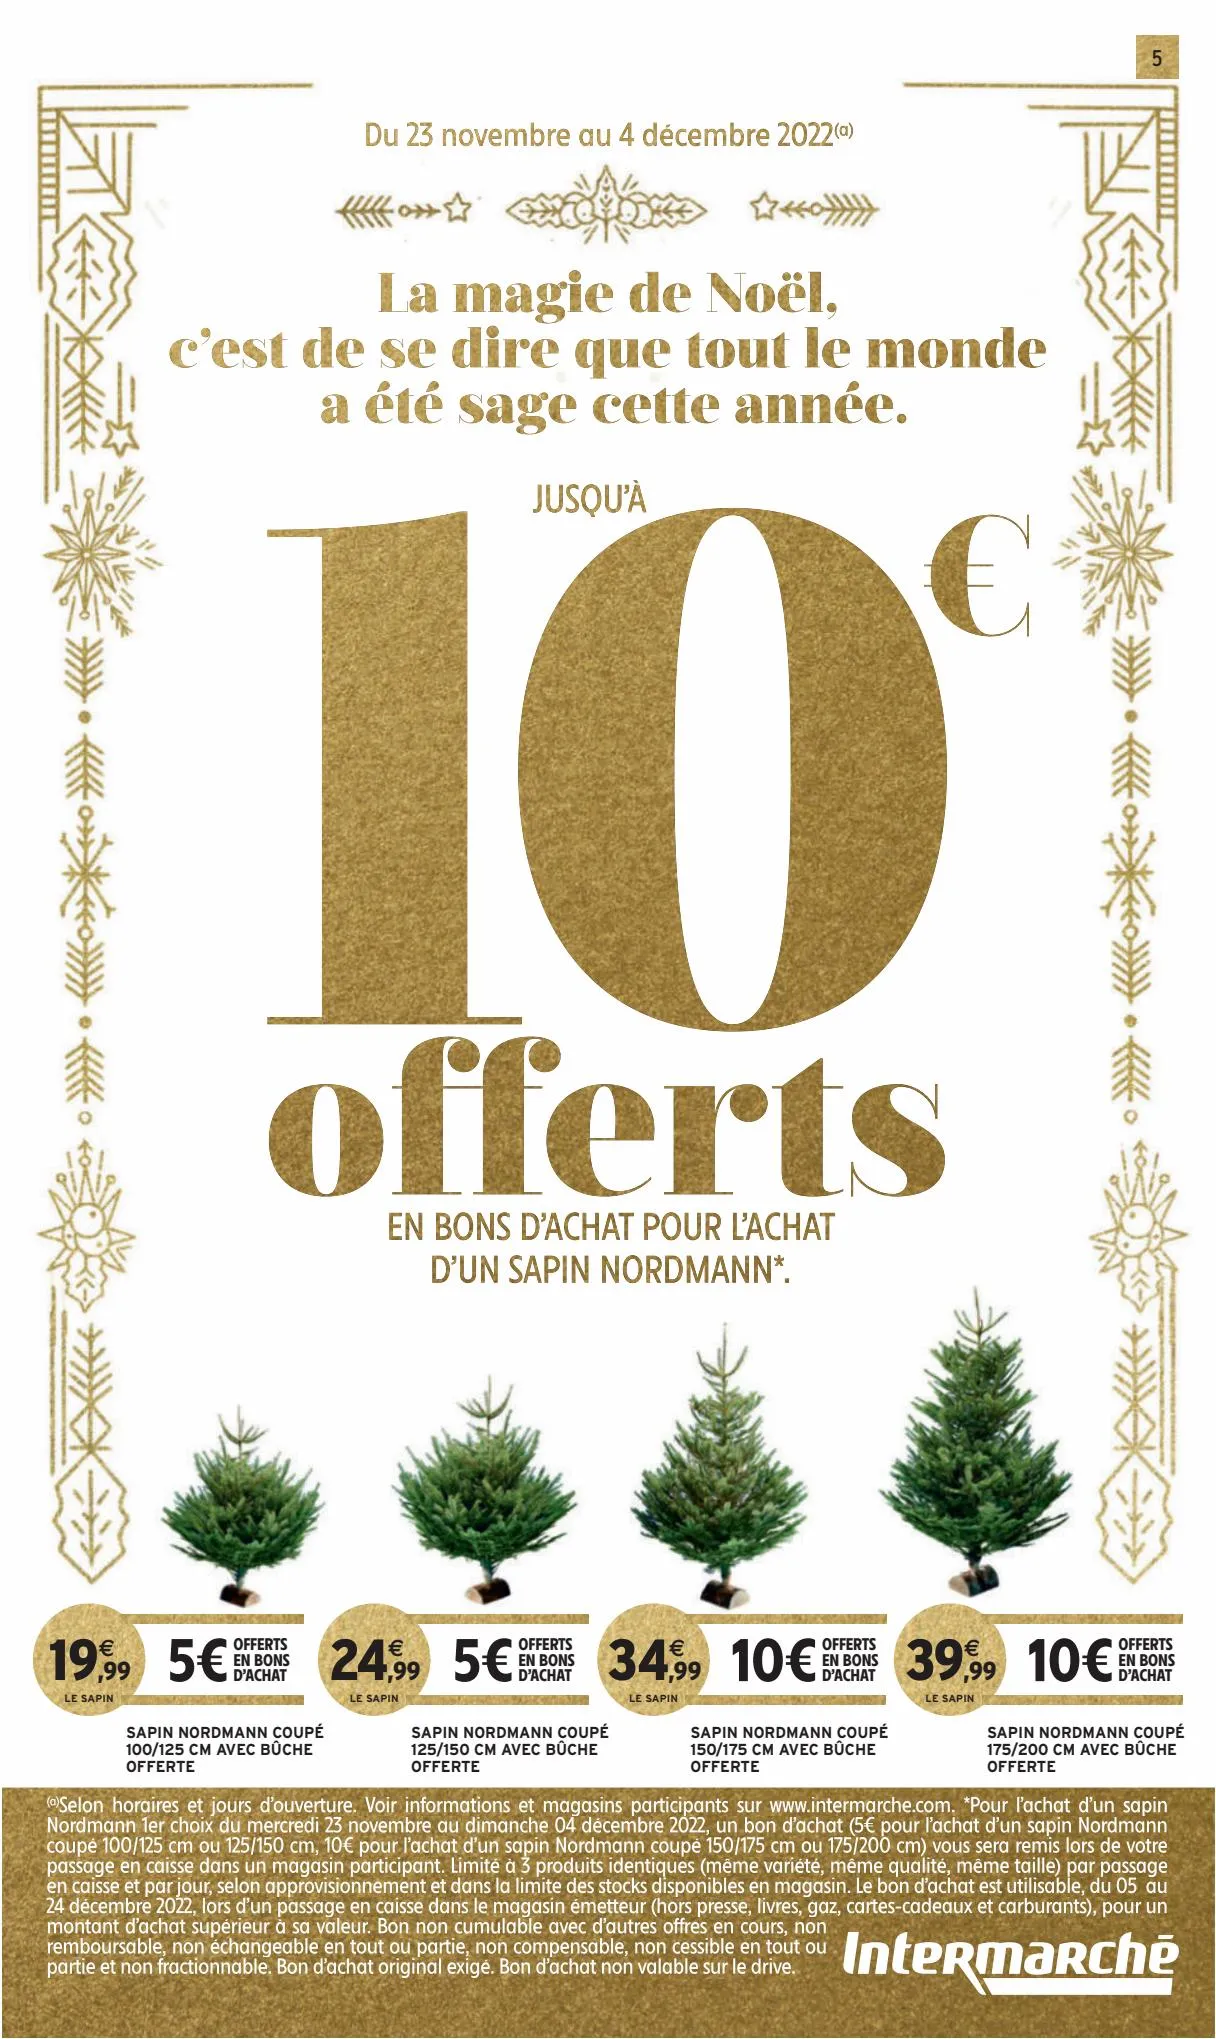 Catalogue 130€ offerts en bons d'achat, page 00005